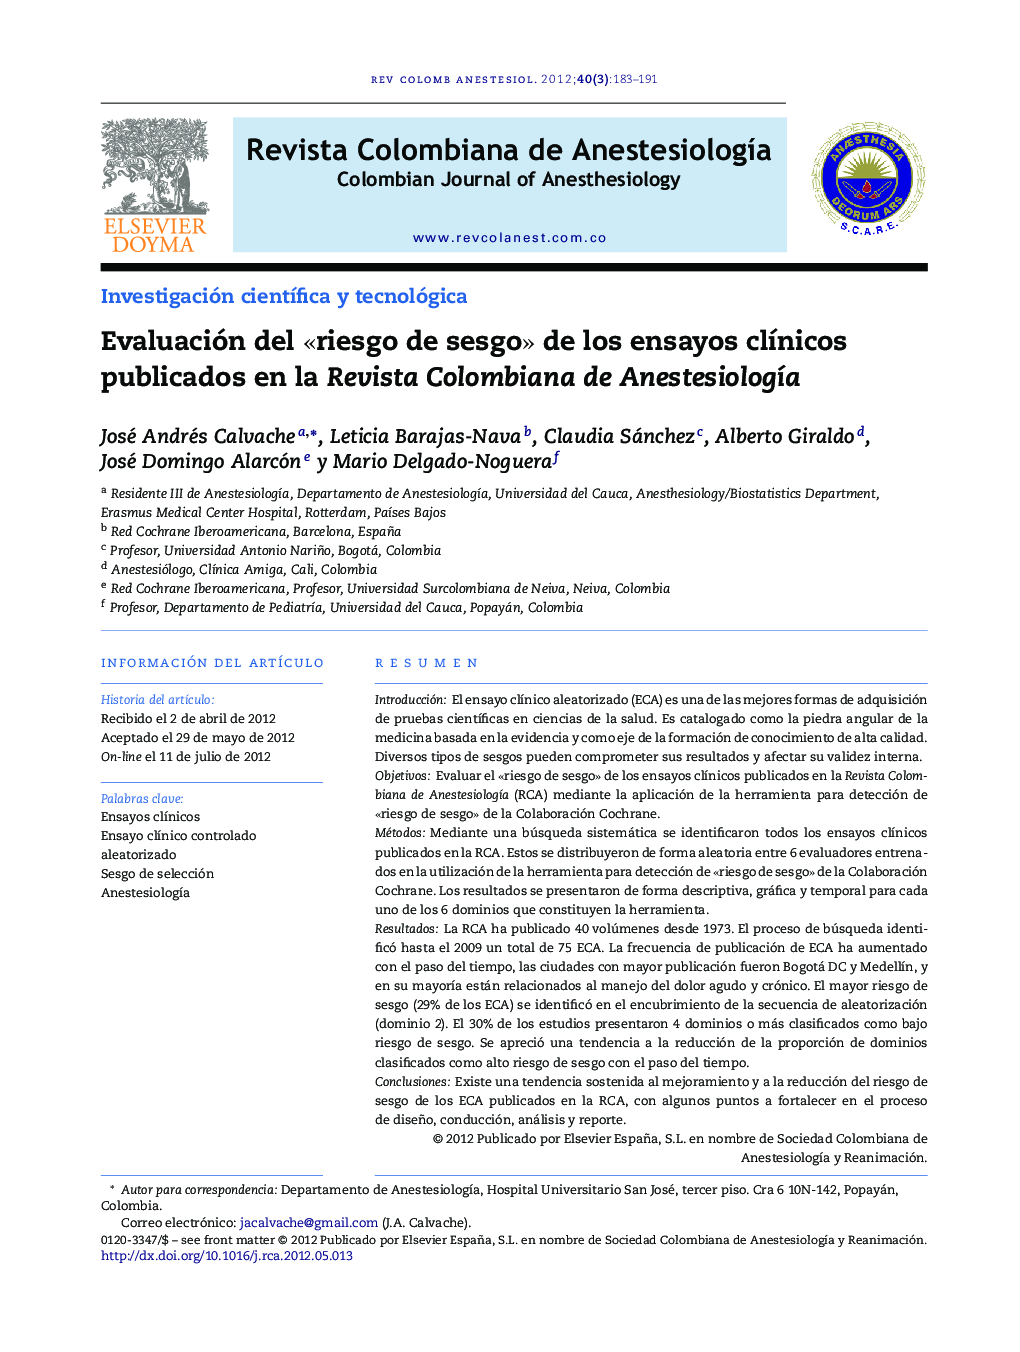 Evaluación del «riesgo de sesgo» de los ensayos clínicos publicados en la Revista Colombiana de Anestesiología